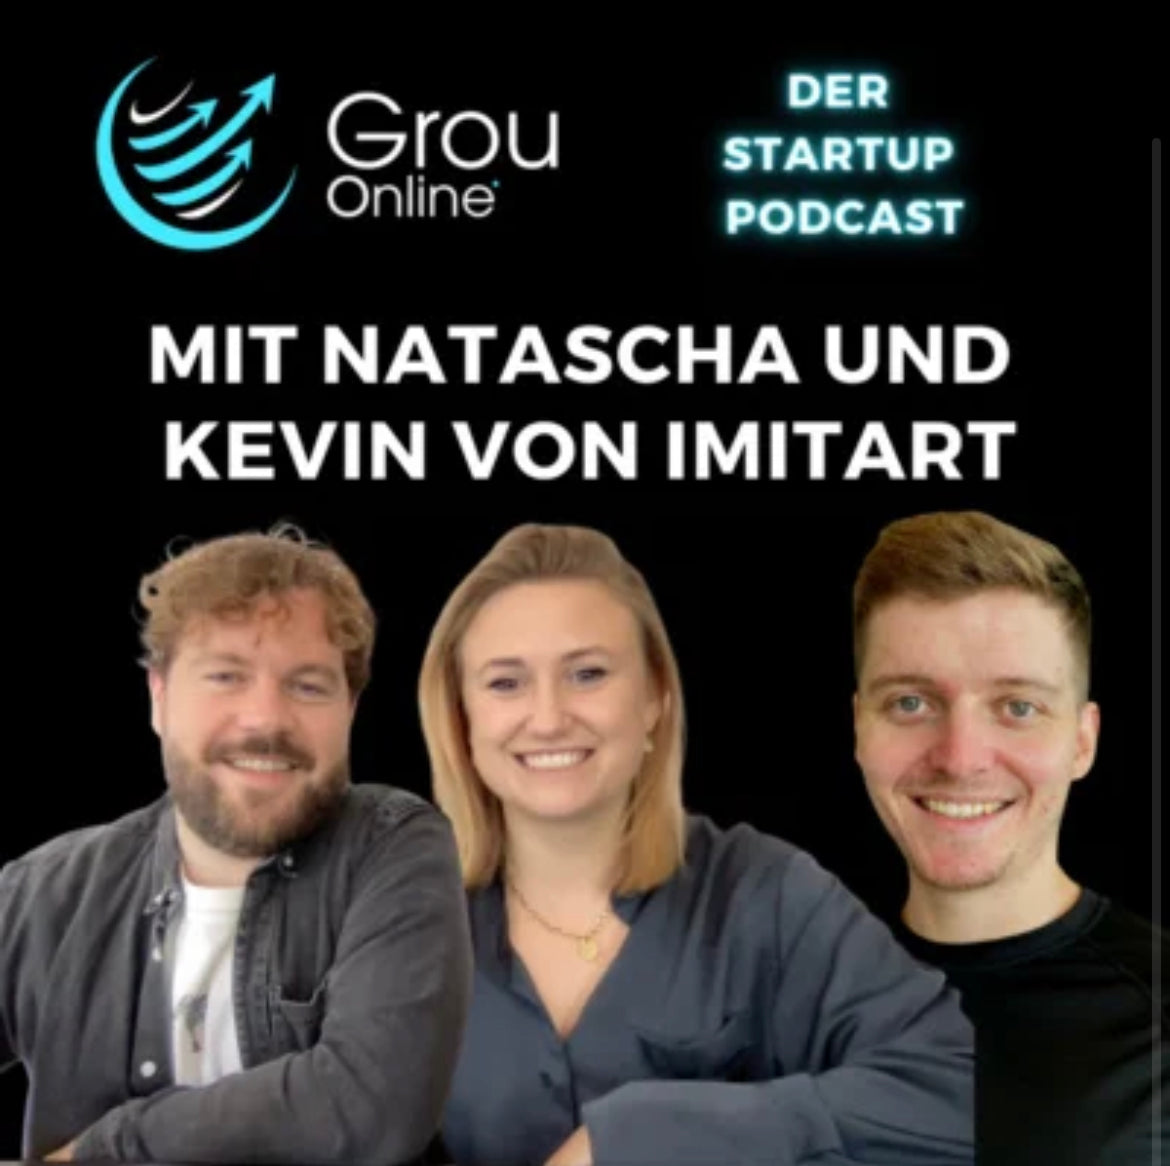 imitart bei Grou Online – GO der Startup Podcast